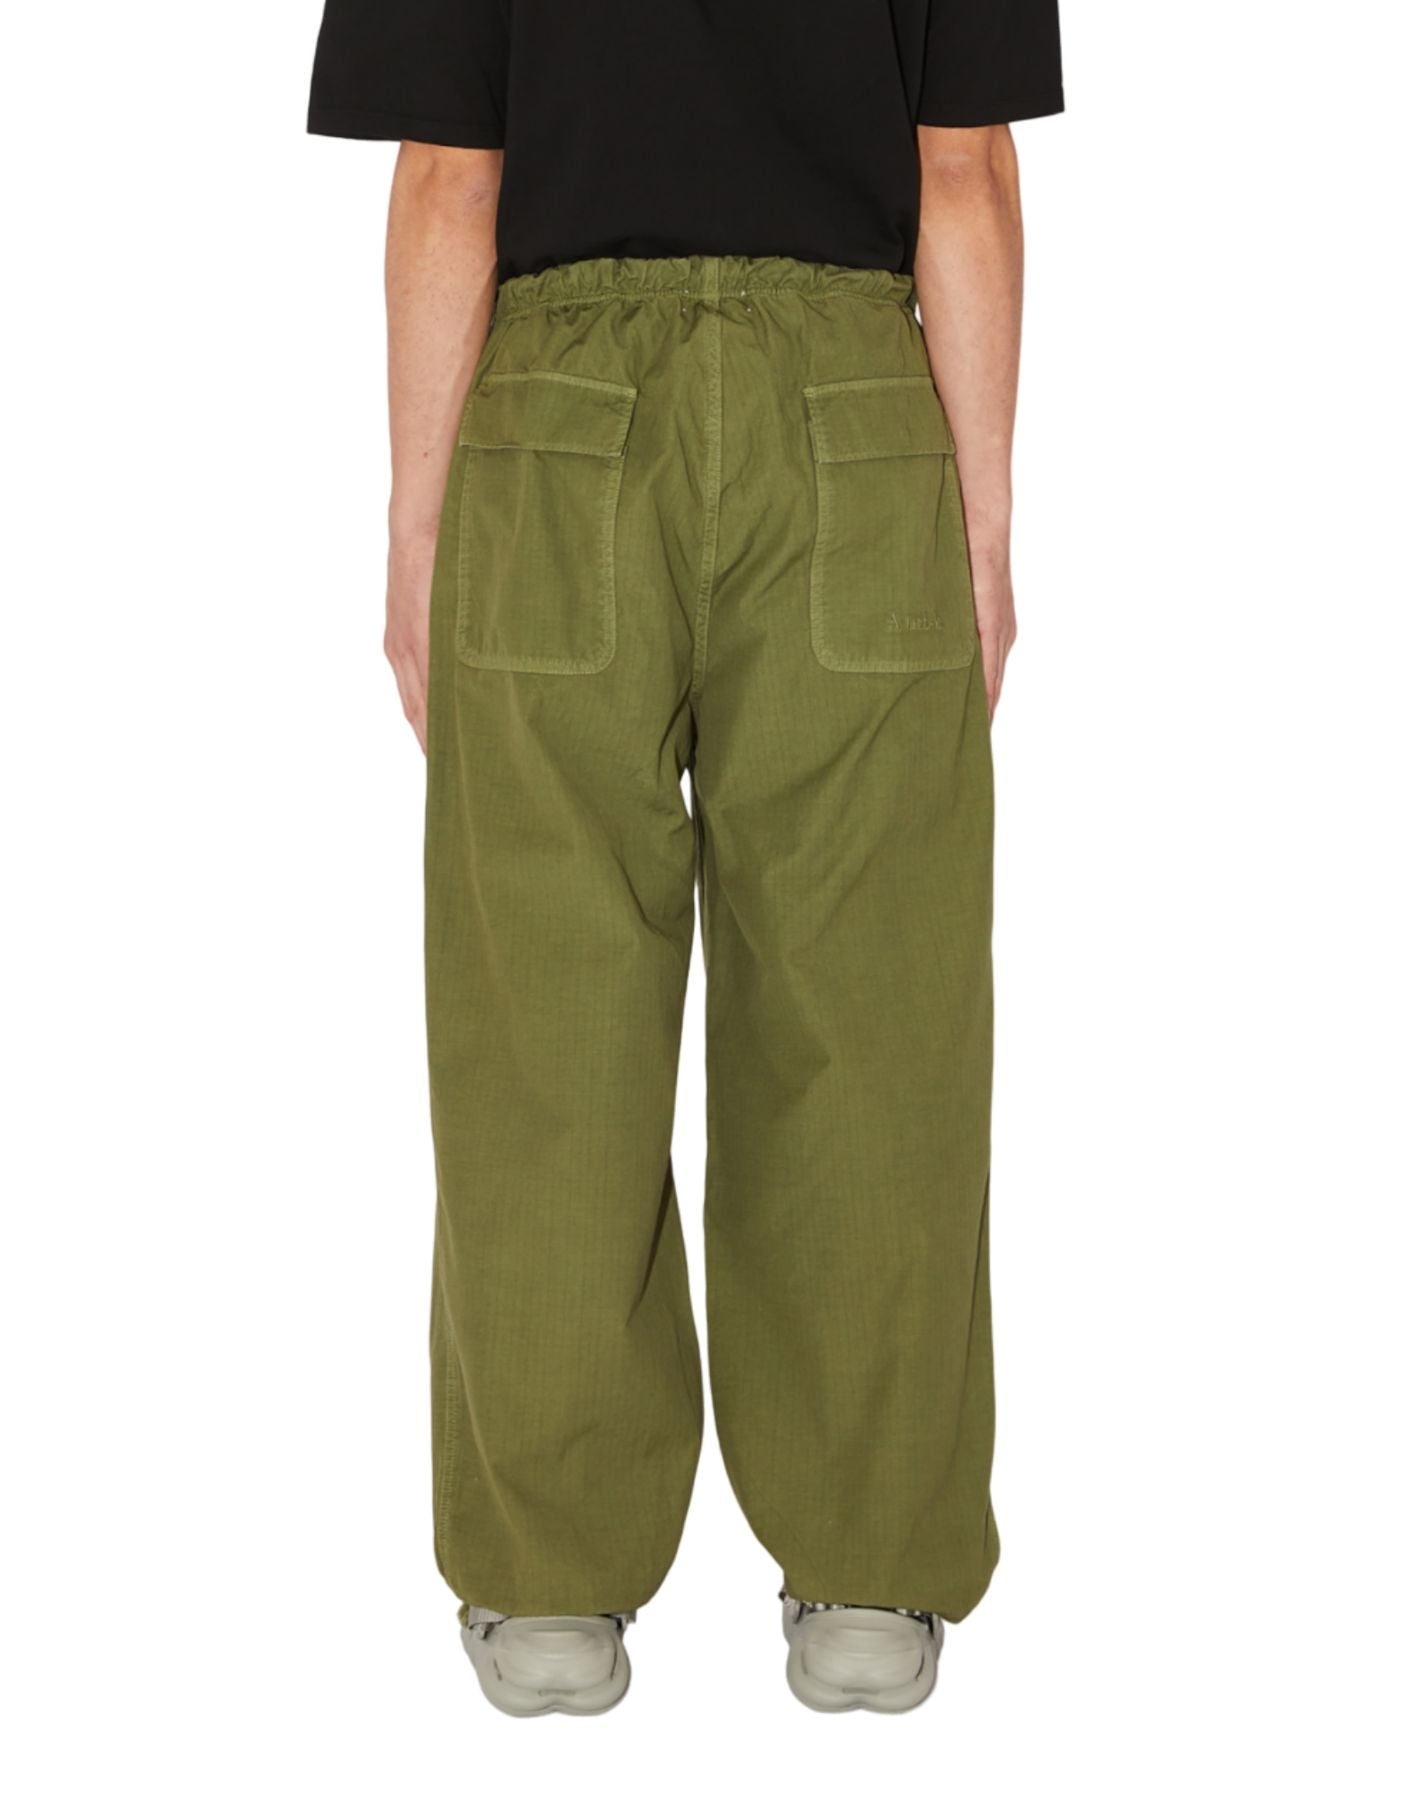 Pants for man AMU067P4160111 ARMY GREEN Amish